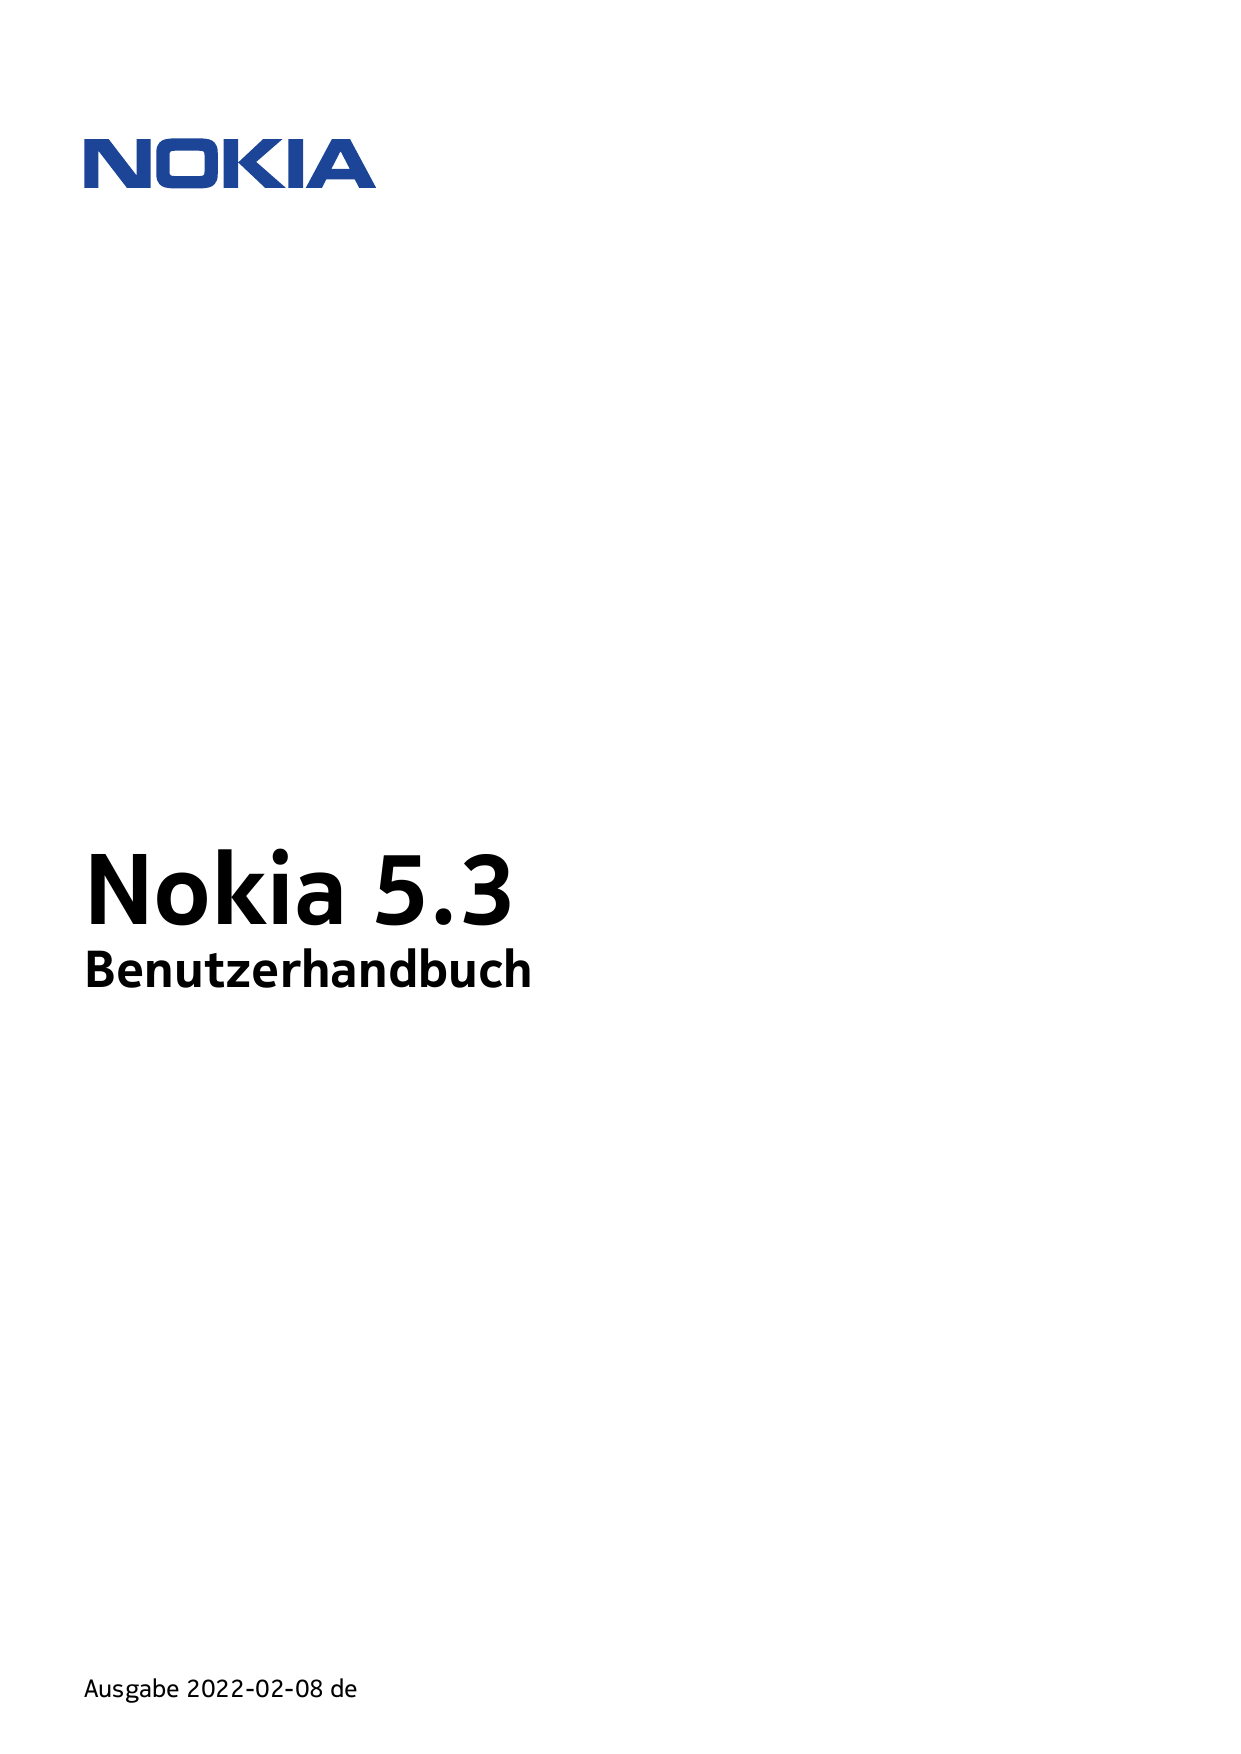 Nokia 5.3BenutzerhandbuchAusgabe 2022-02-08 de